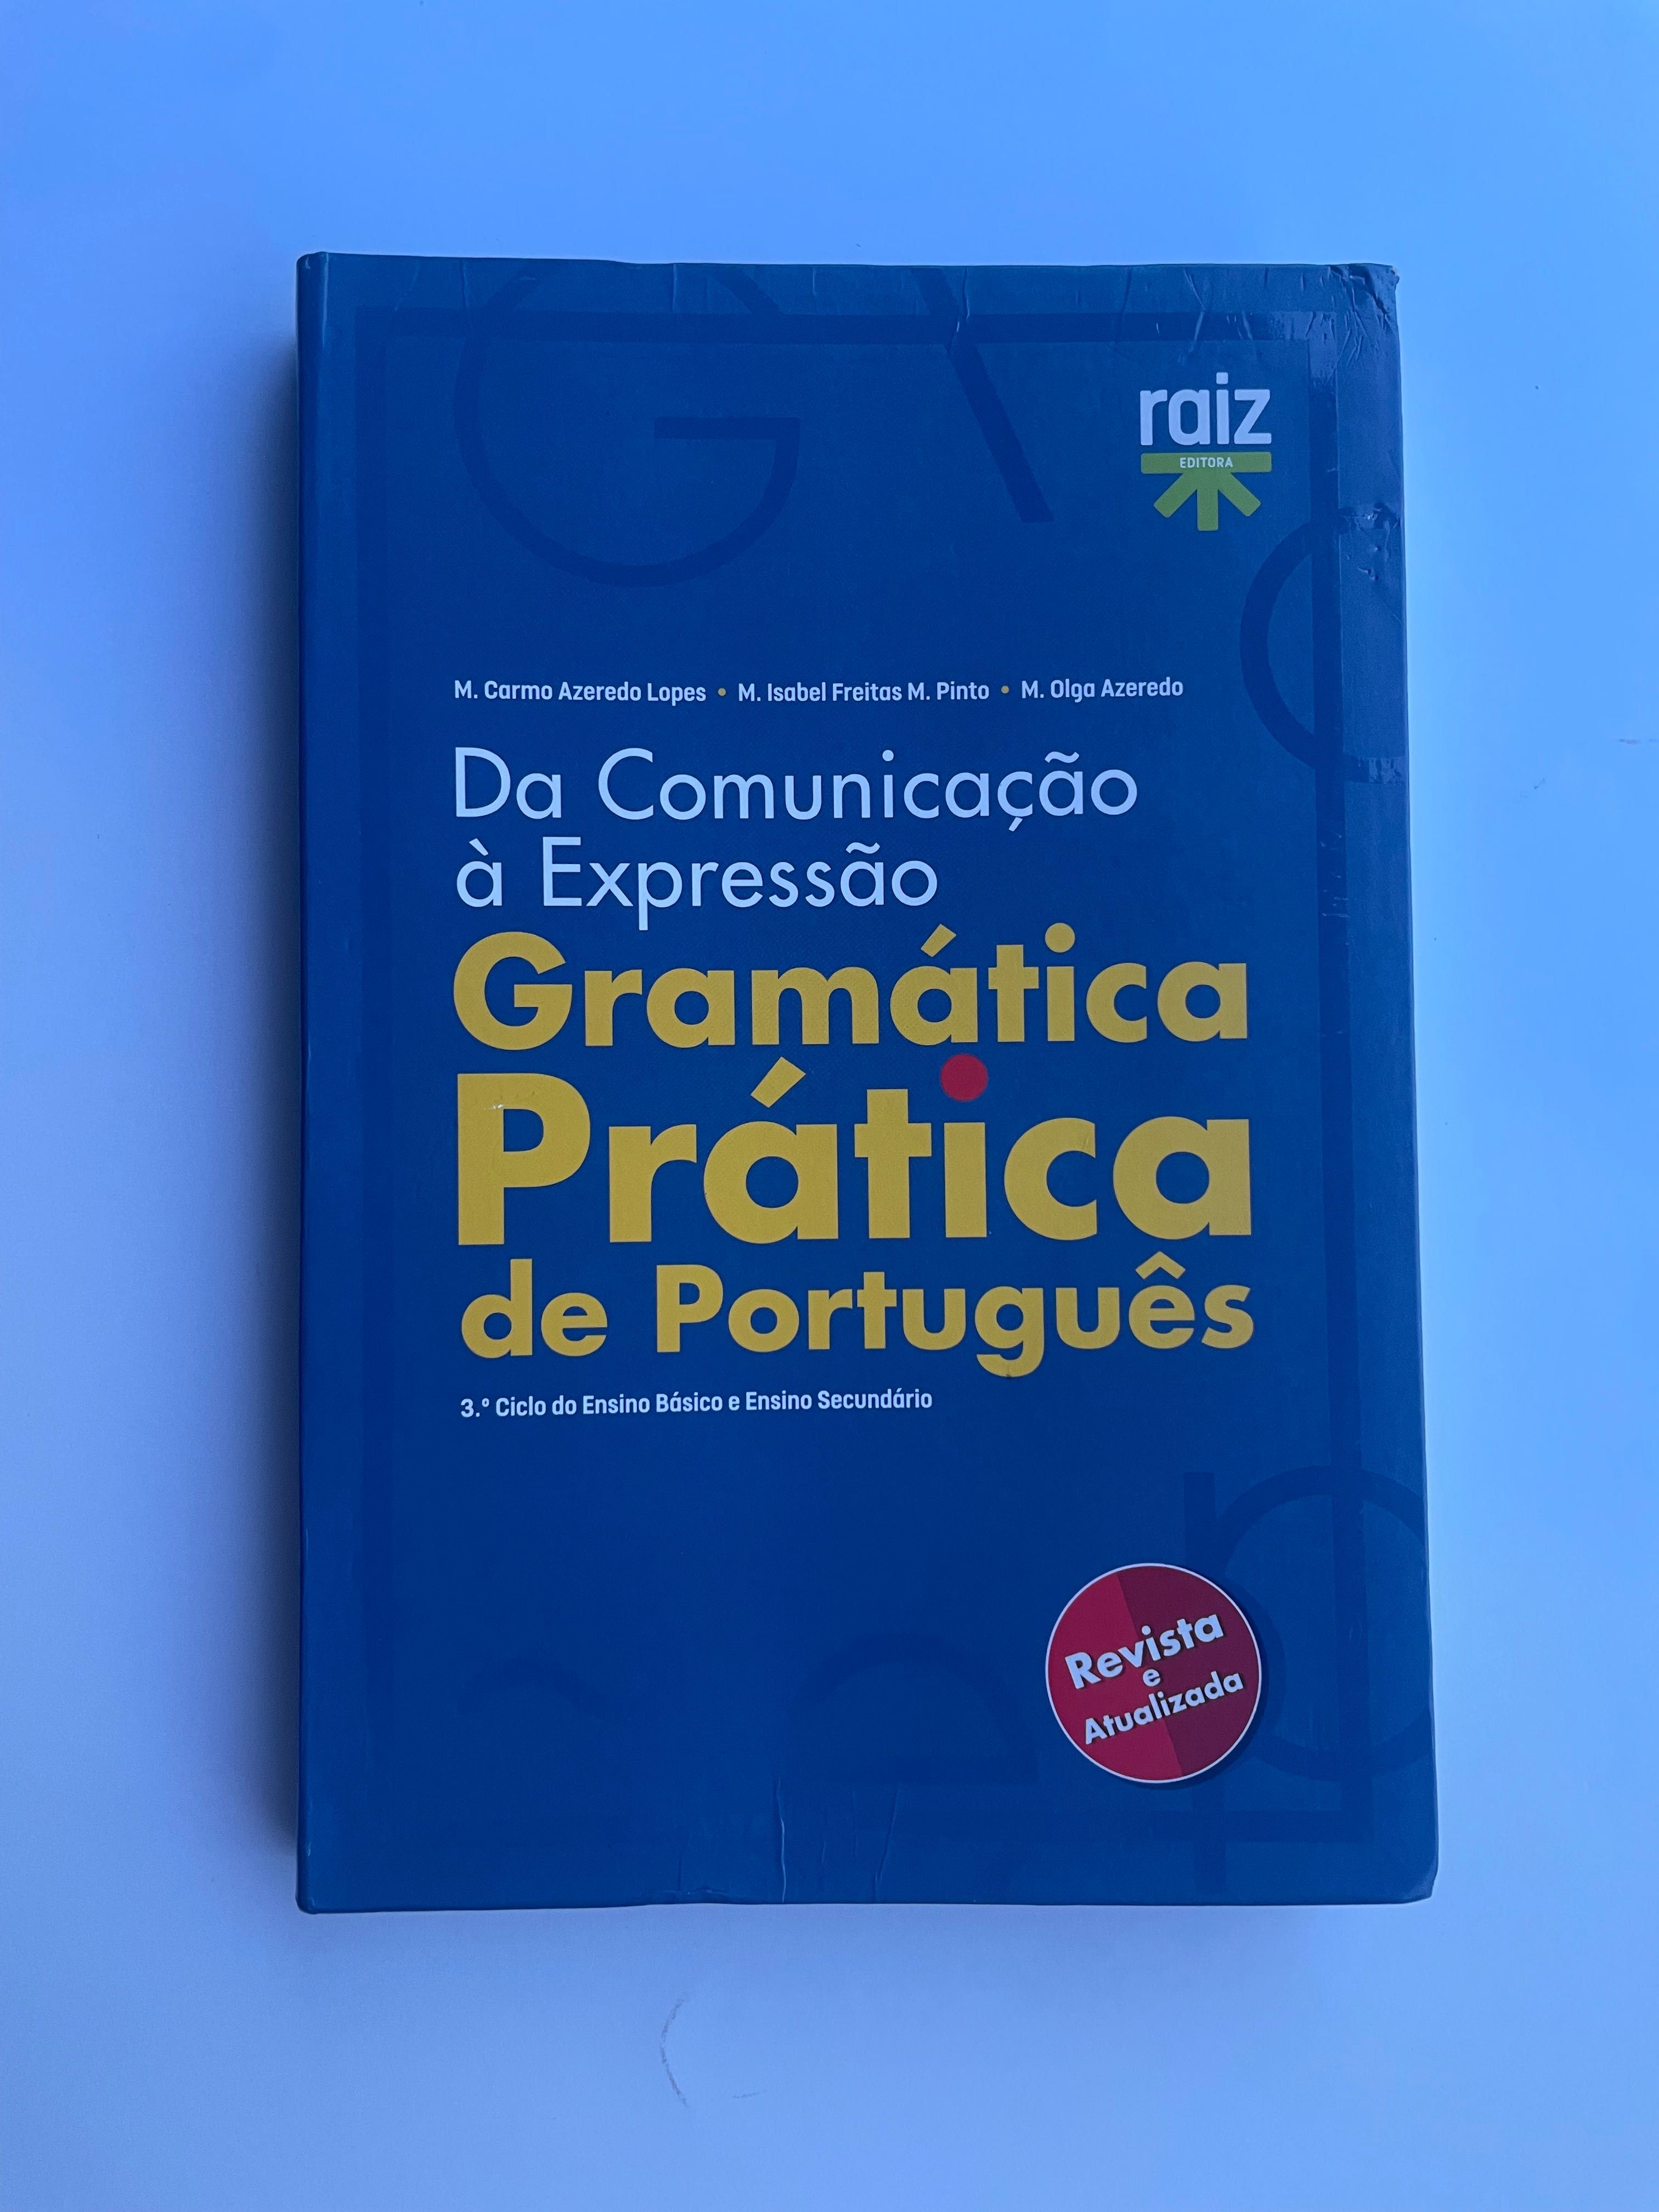 Gramática Prática de Português